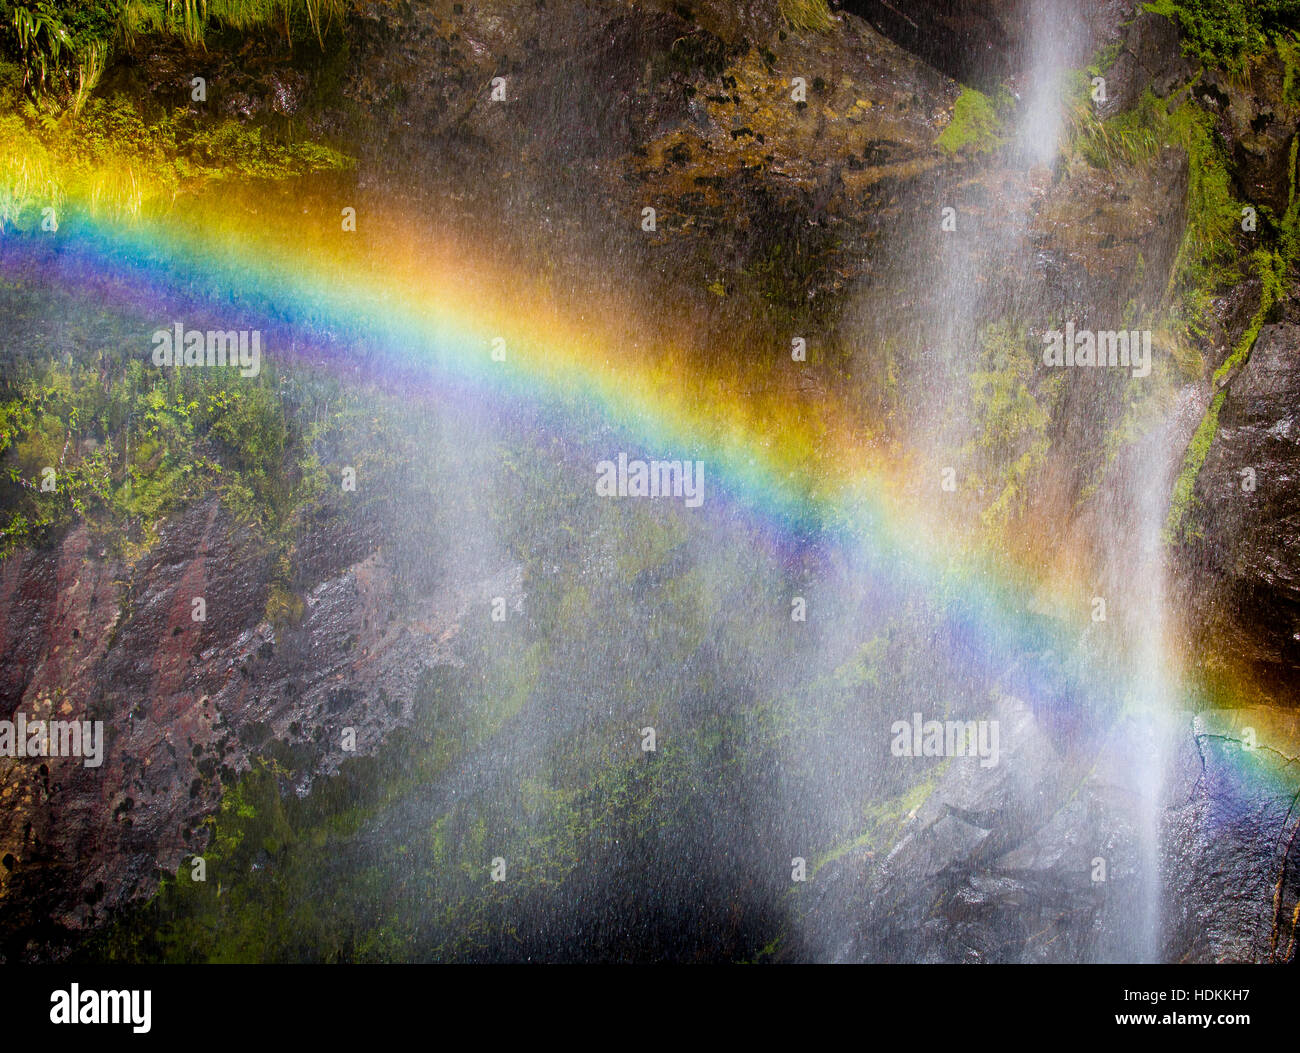 Regenbogen, verursacht durch Brechung des Sonnenlichts in den feinen Nebel eines Wasserfalls in Milford Sound in Neuseeland Fjordland Südinsel Stockfoto